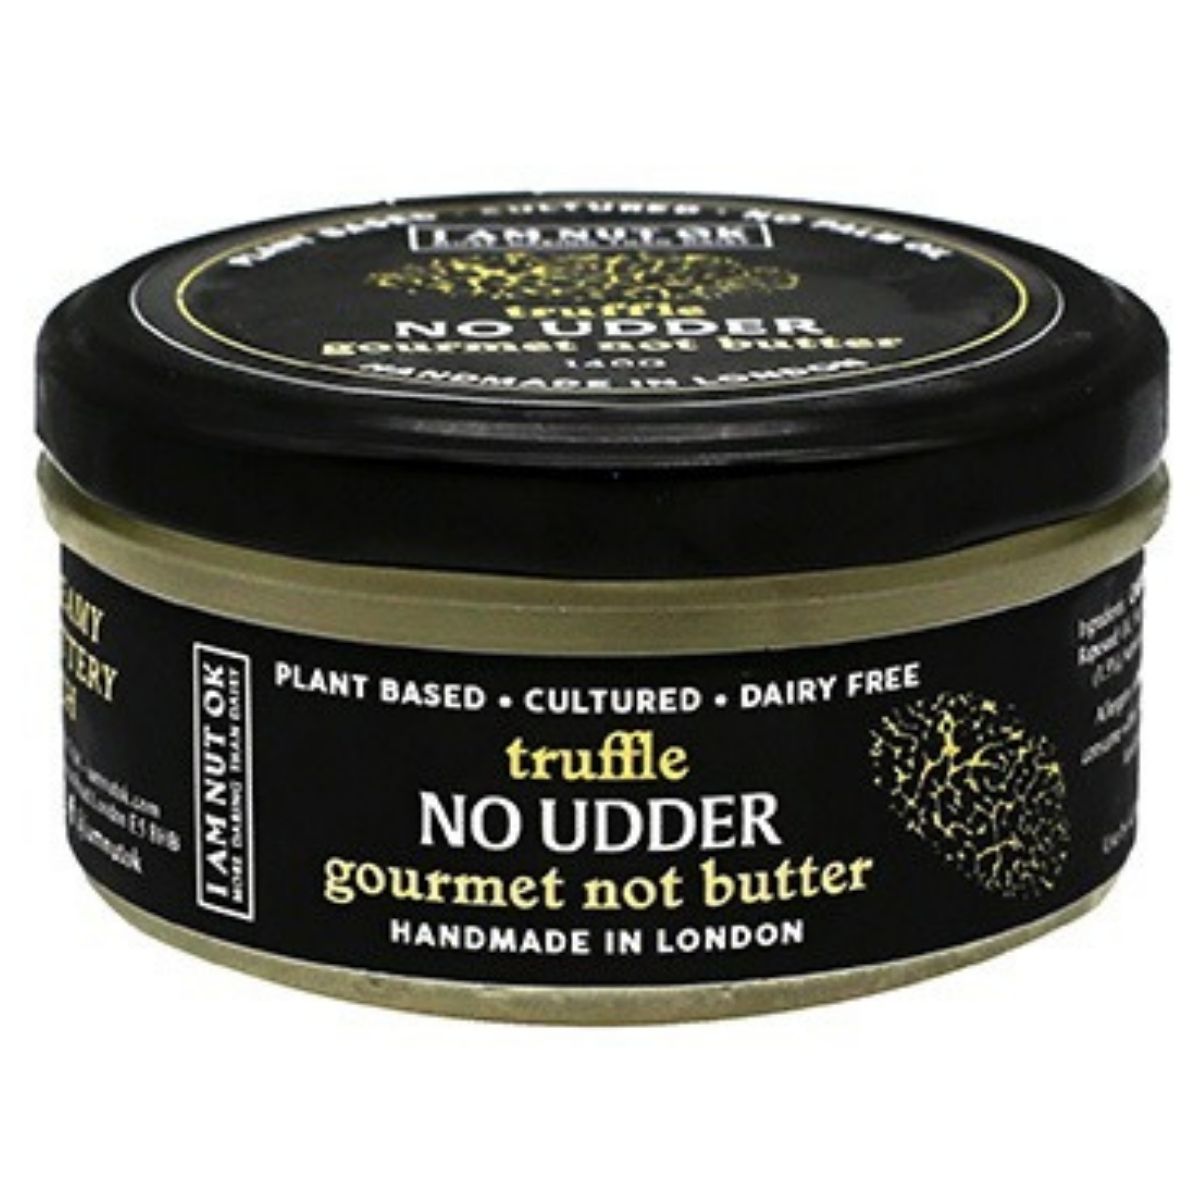 I Am Nut OK Gourmet Not Butter Truffle - 140g ❄️